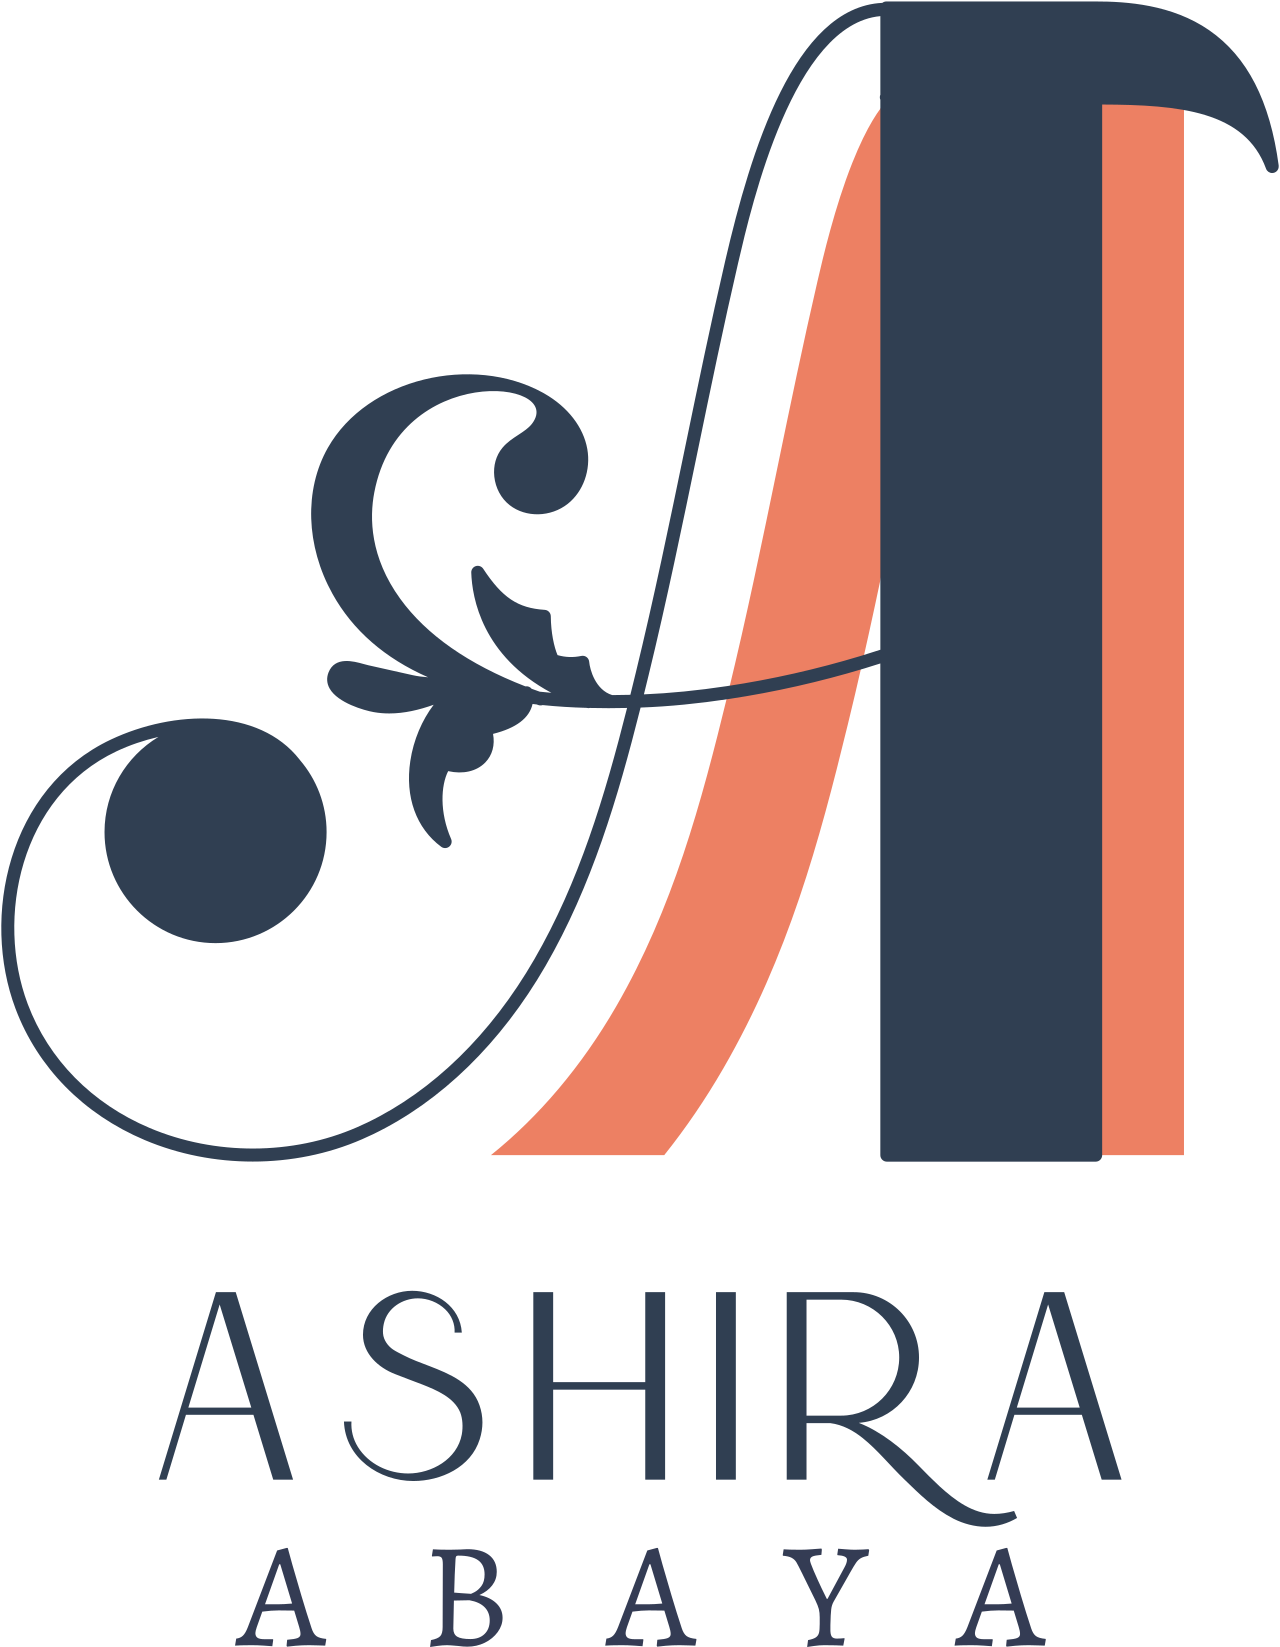 ASHIRA's logo